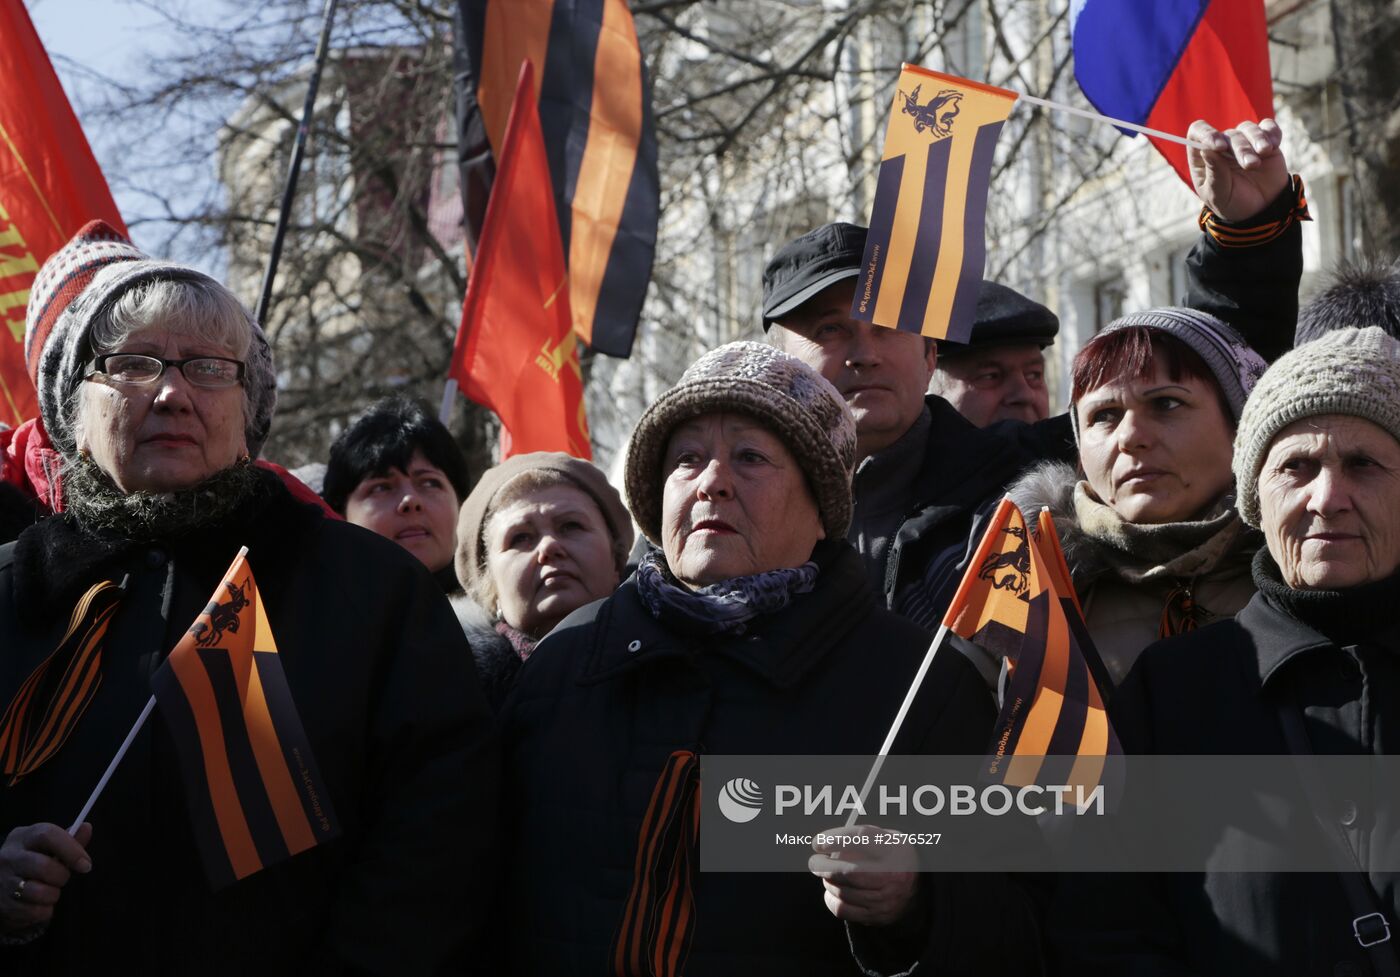 Митинг движения "Антимайдан" в Крыму